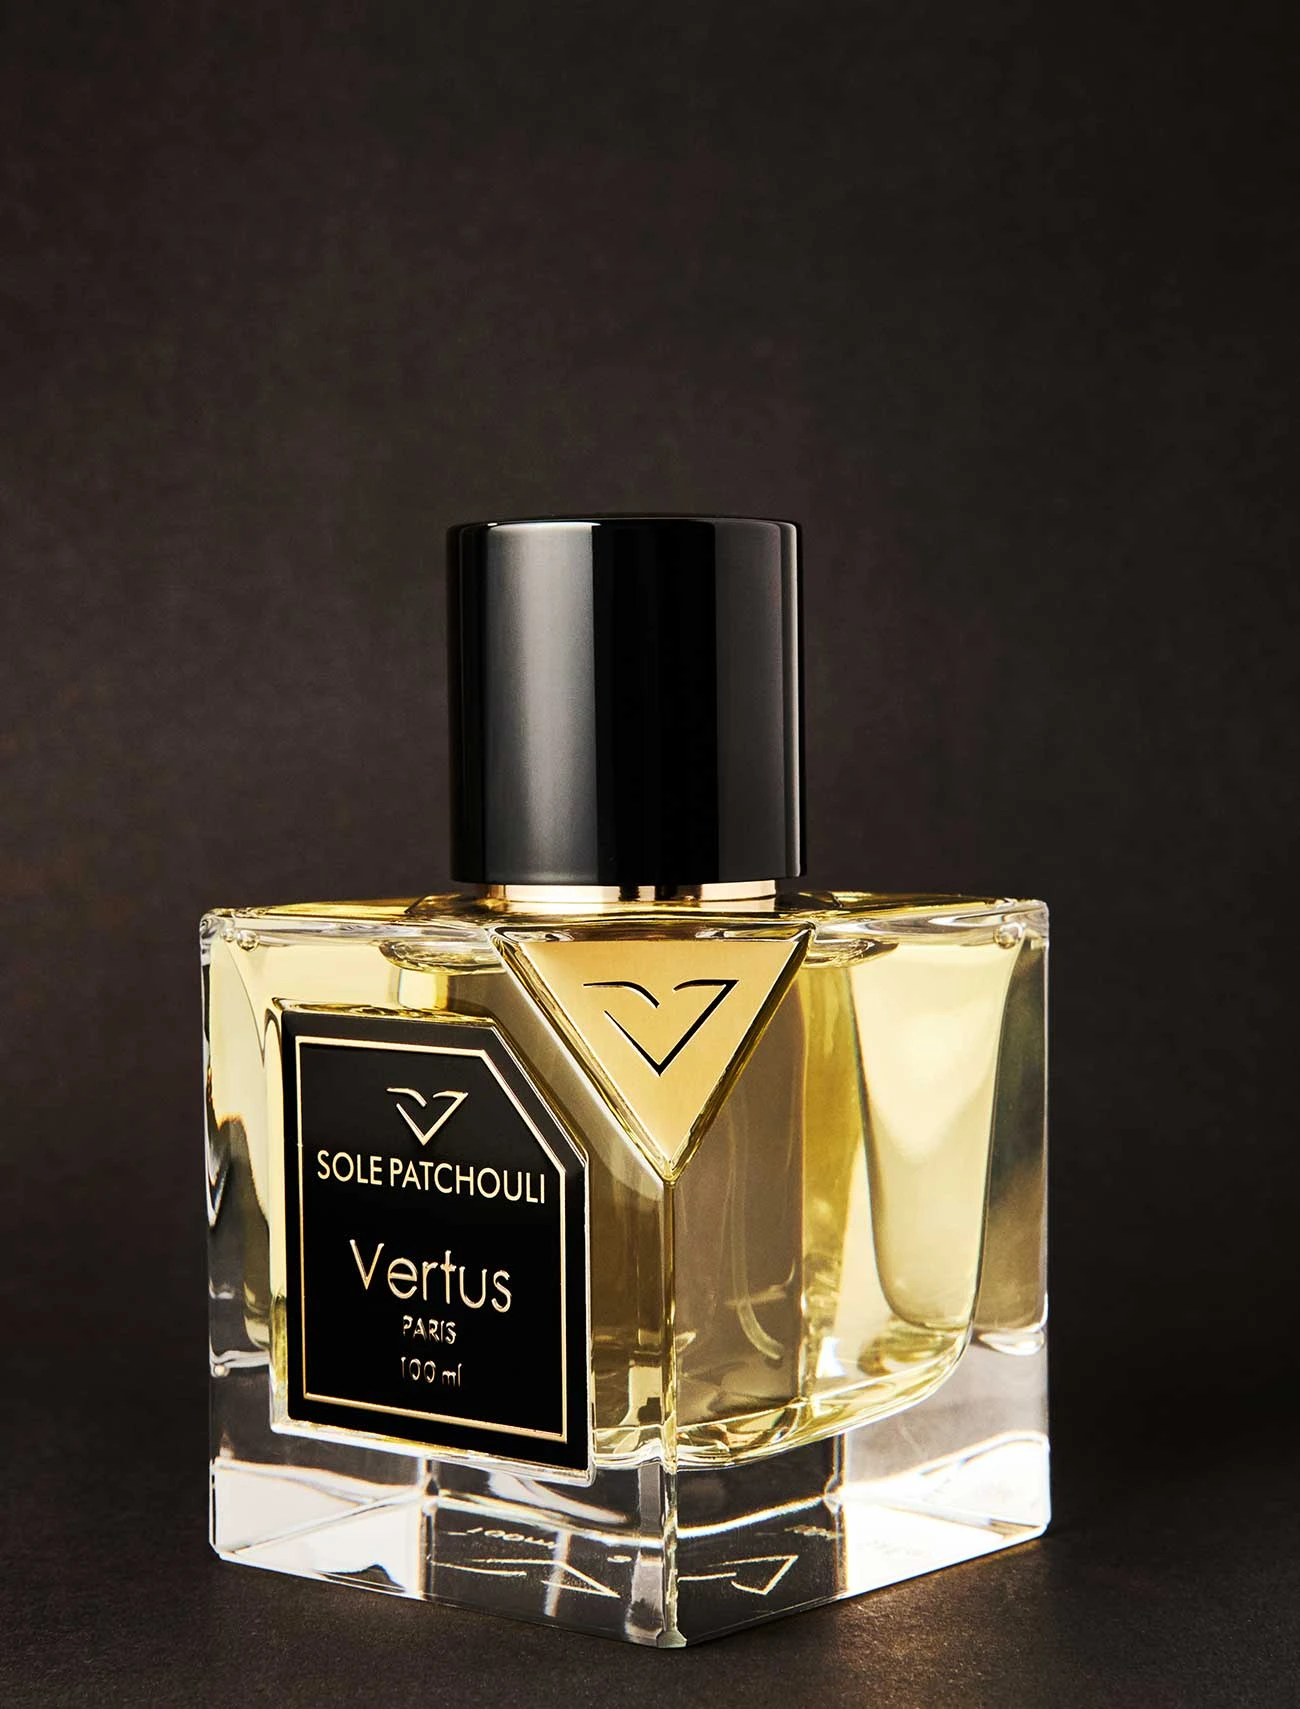 Vertus Sole Patchouli Eau De Parfum for Unisex by Vertus